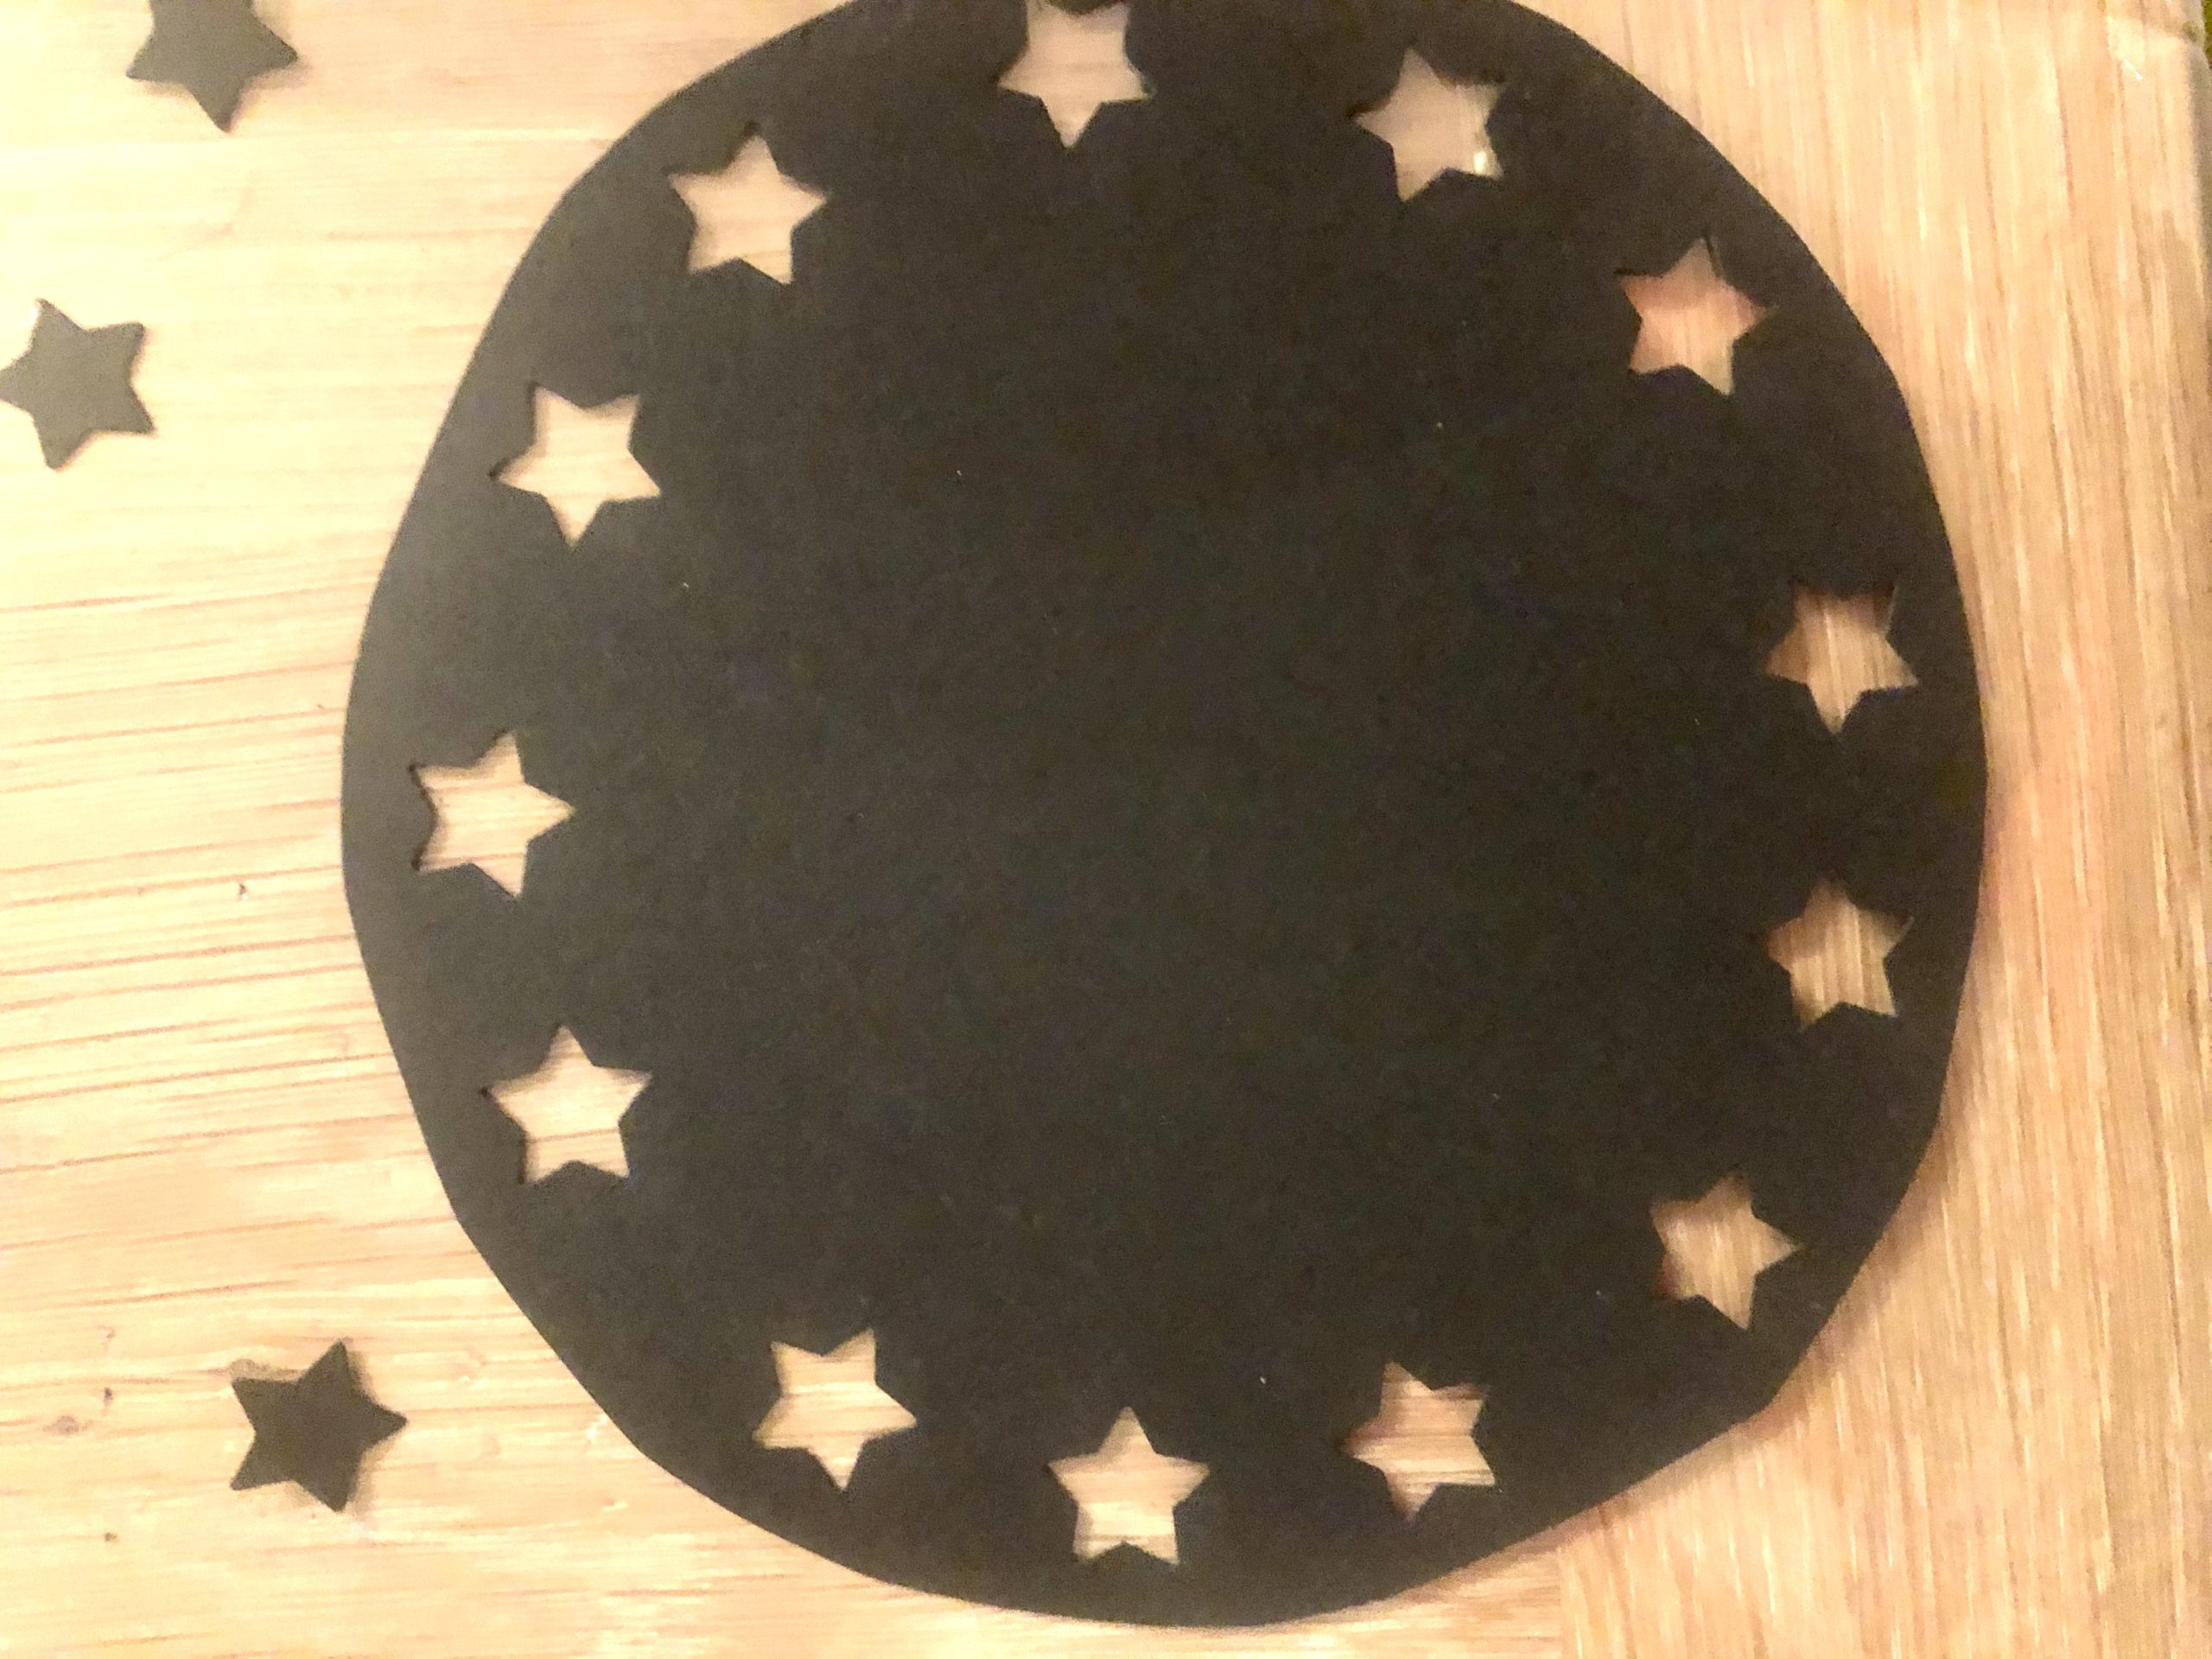 Bild zum Schritt 14 für das Bastel- und DIY-Abenteuer für Kinder: 'Dann stanzt ihr einmal rund um den Kreis herum Sterne...'